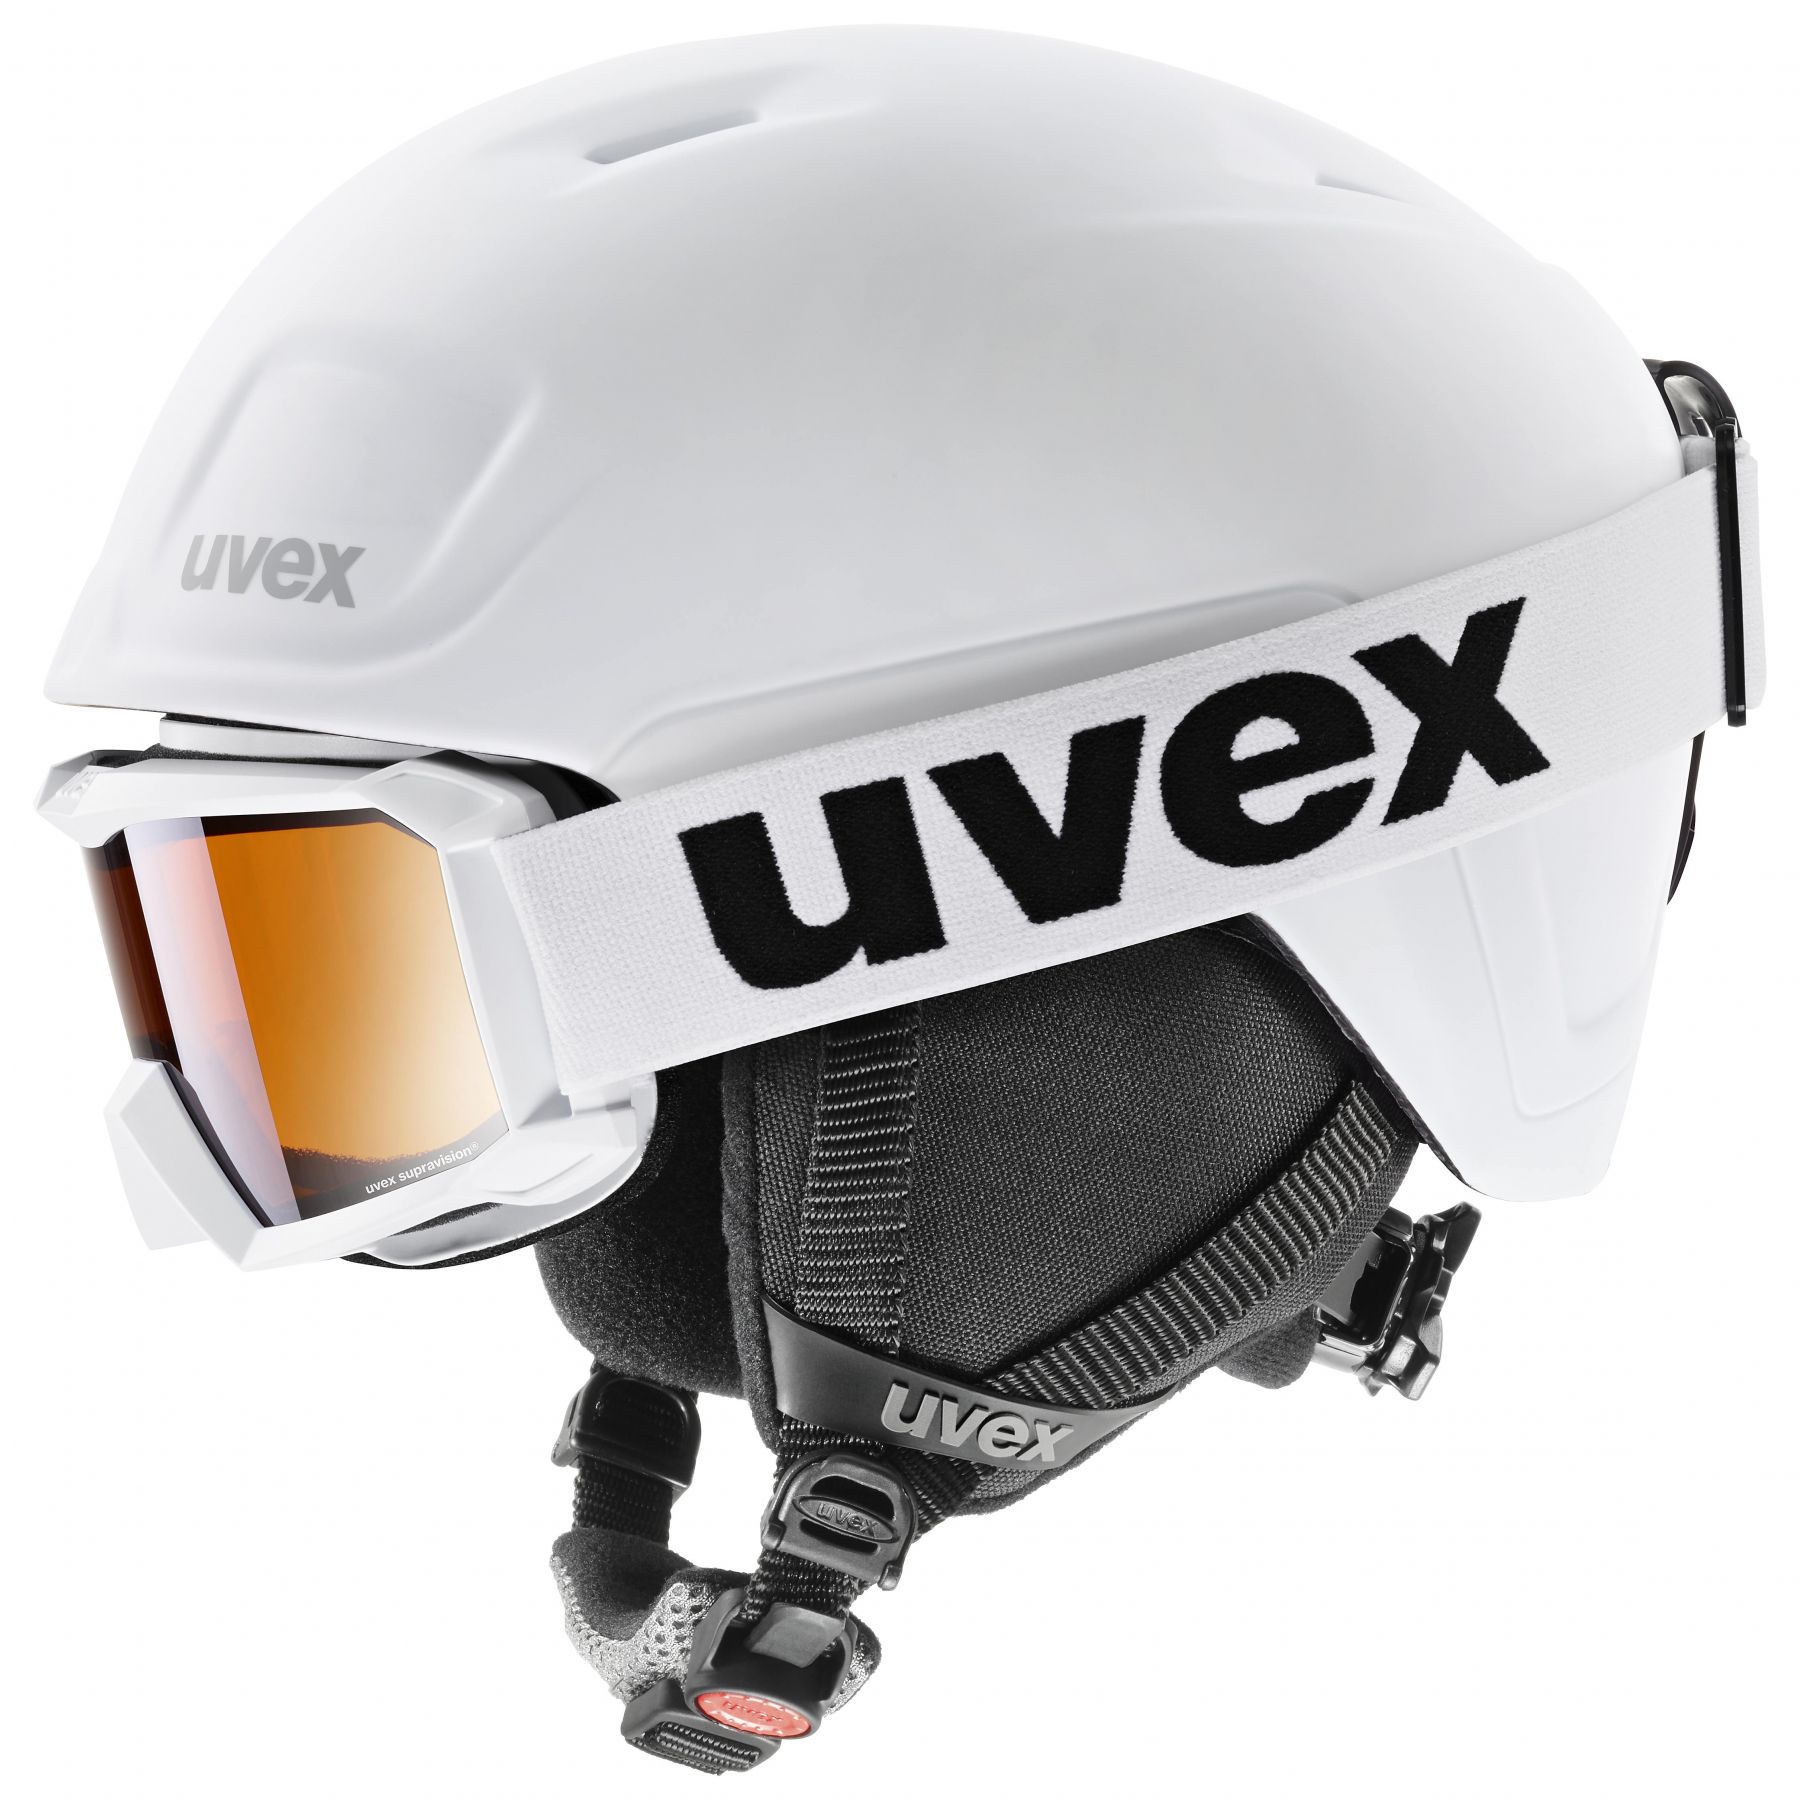 Billede af Uvex Heyya Pro Set, skihjelm + skibrille, junior, hvid